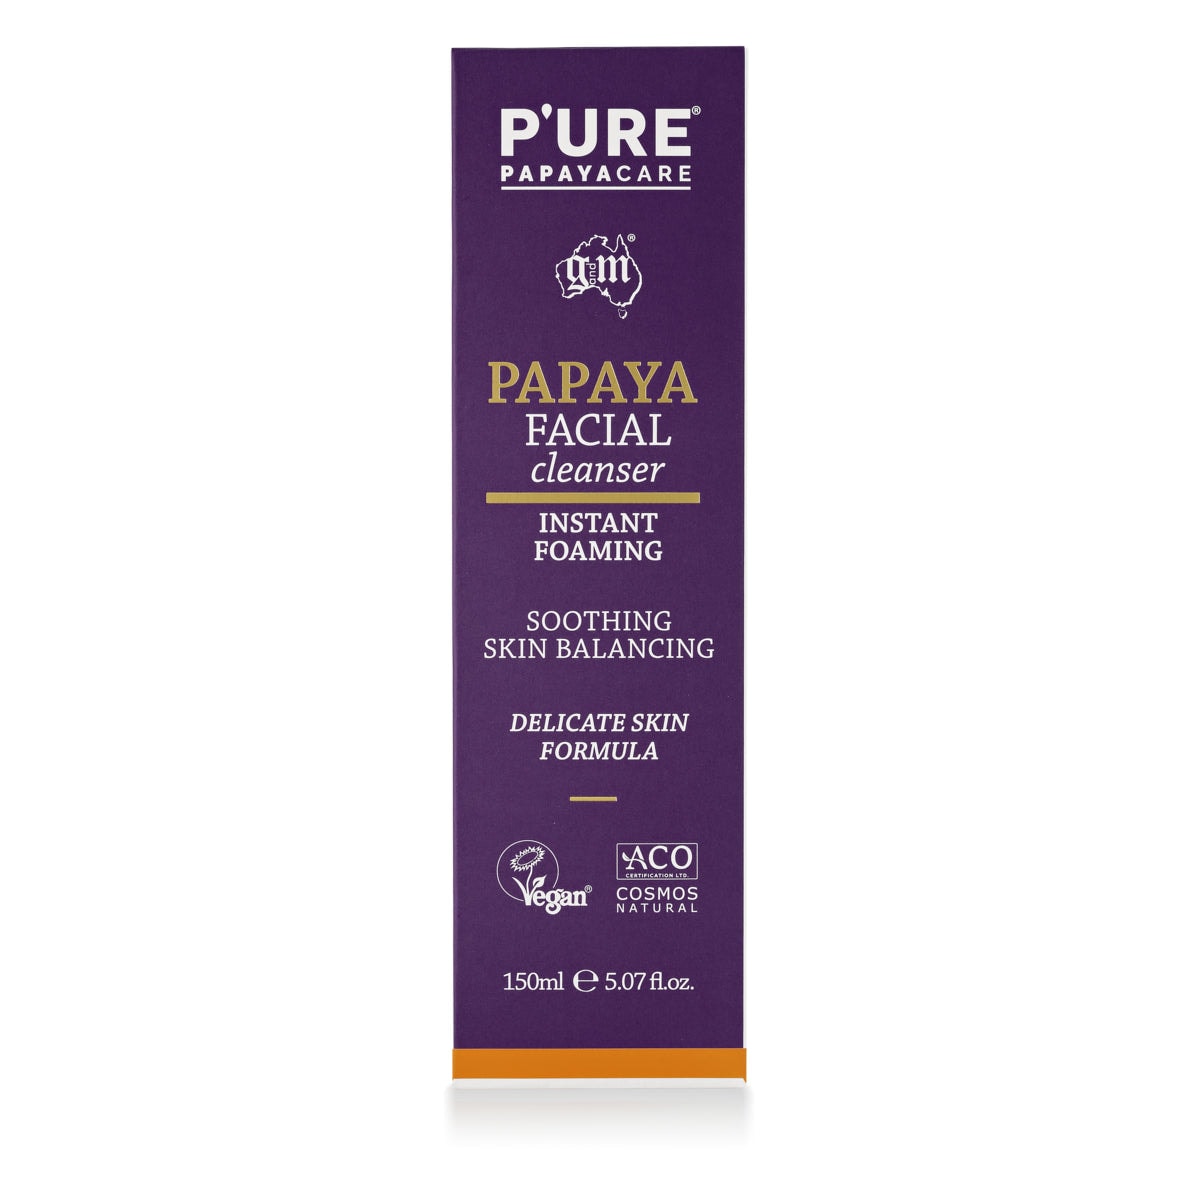 P'ure Papayacare Papaya Facial Cleanser 150ml